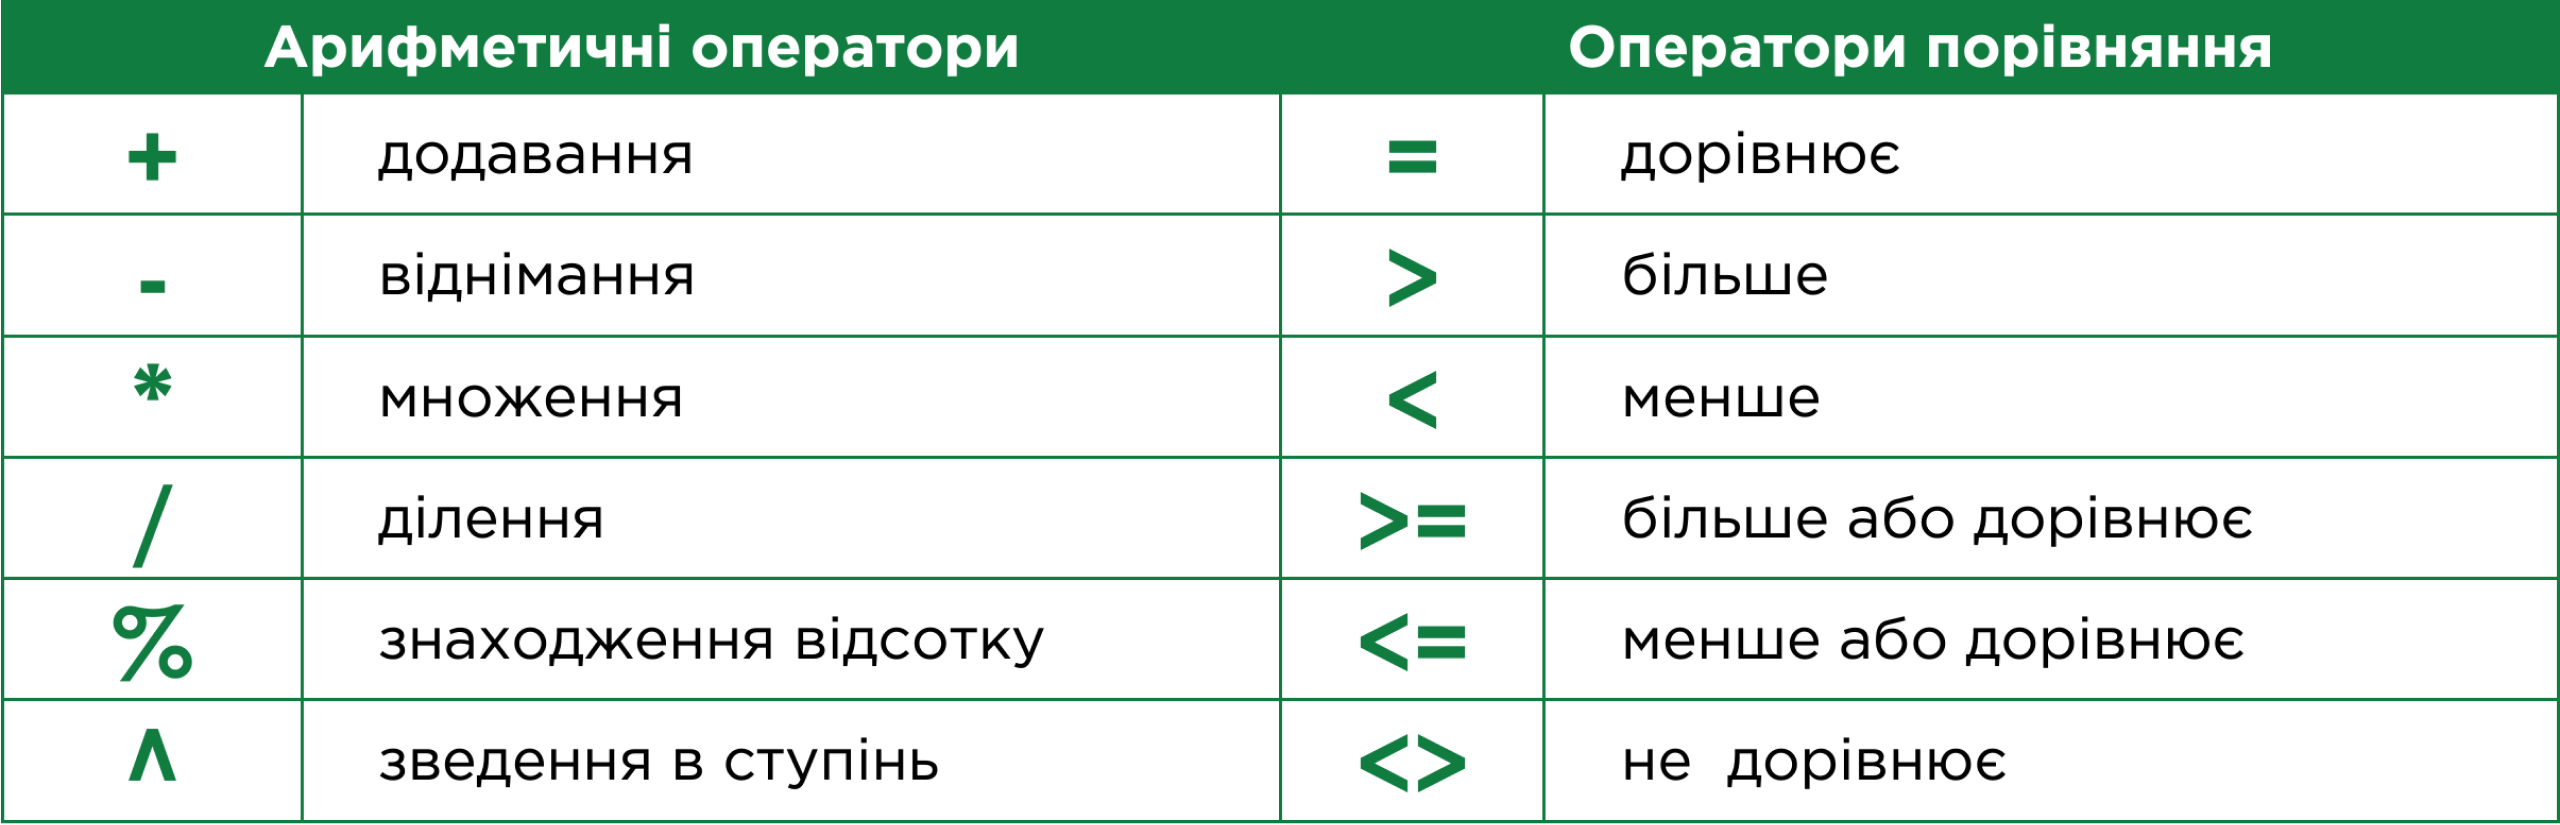 Таблиця операторів